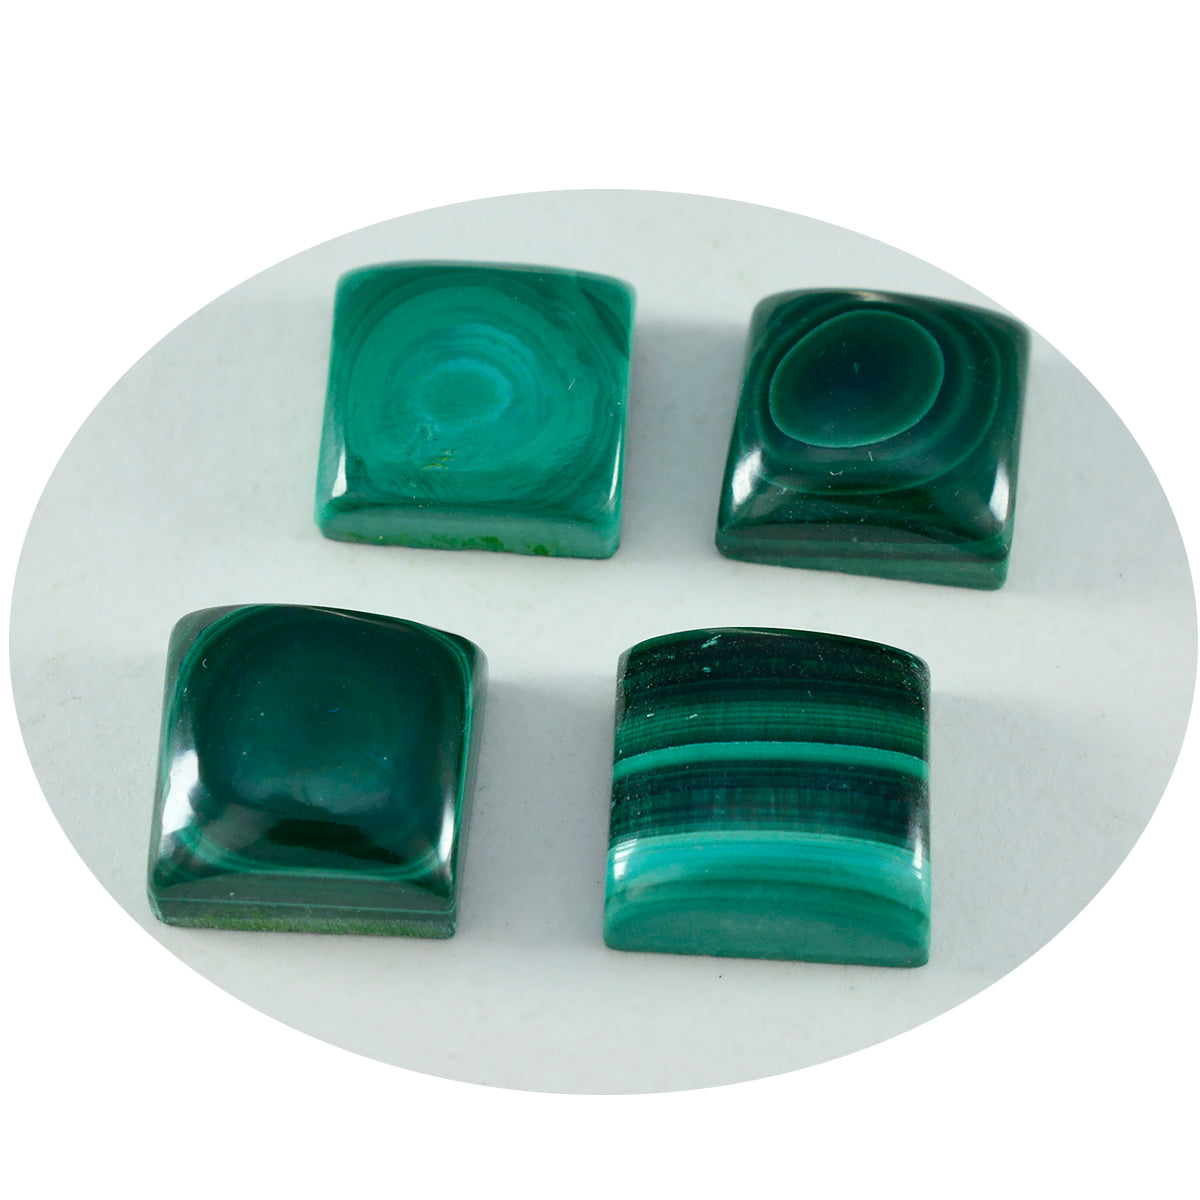 Riyogems 1 Stück grüner Malachit-Cabochon, 12 x 12 mm, quadratische Form, A+-Qualität, loser Stein